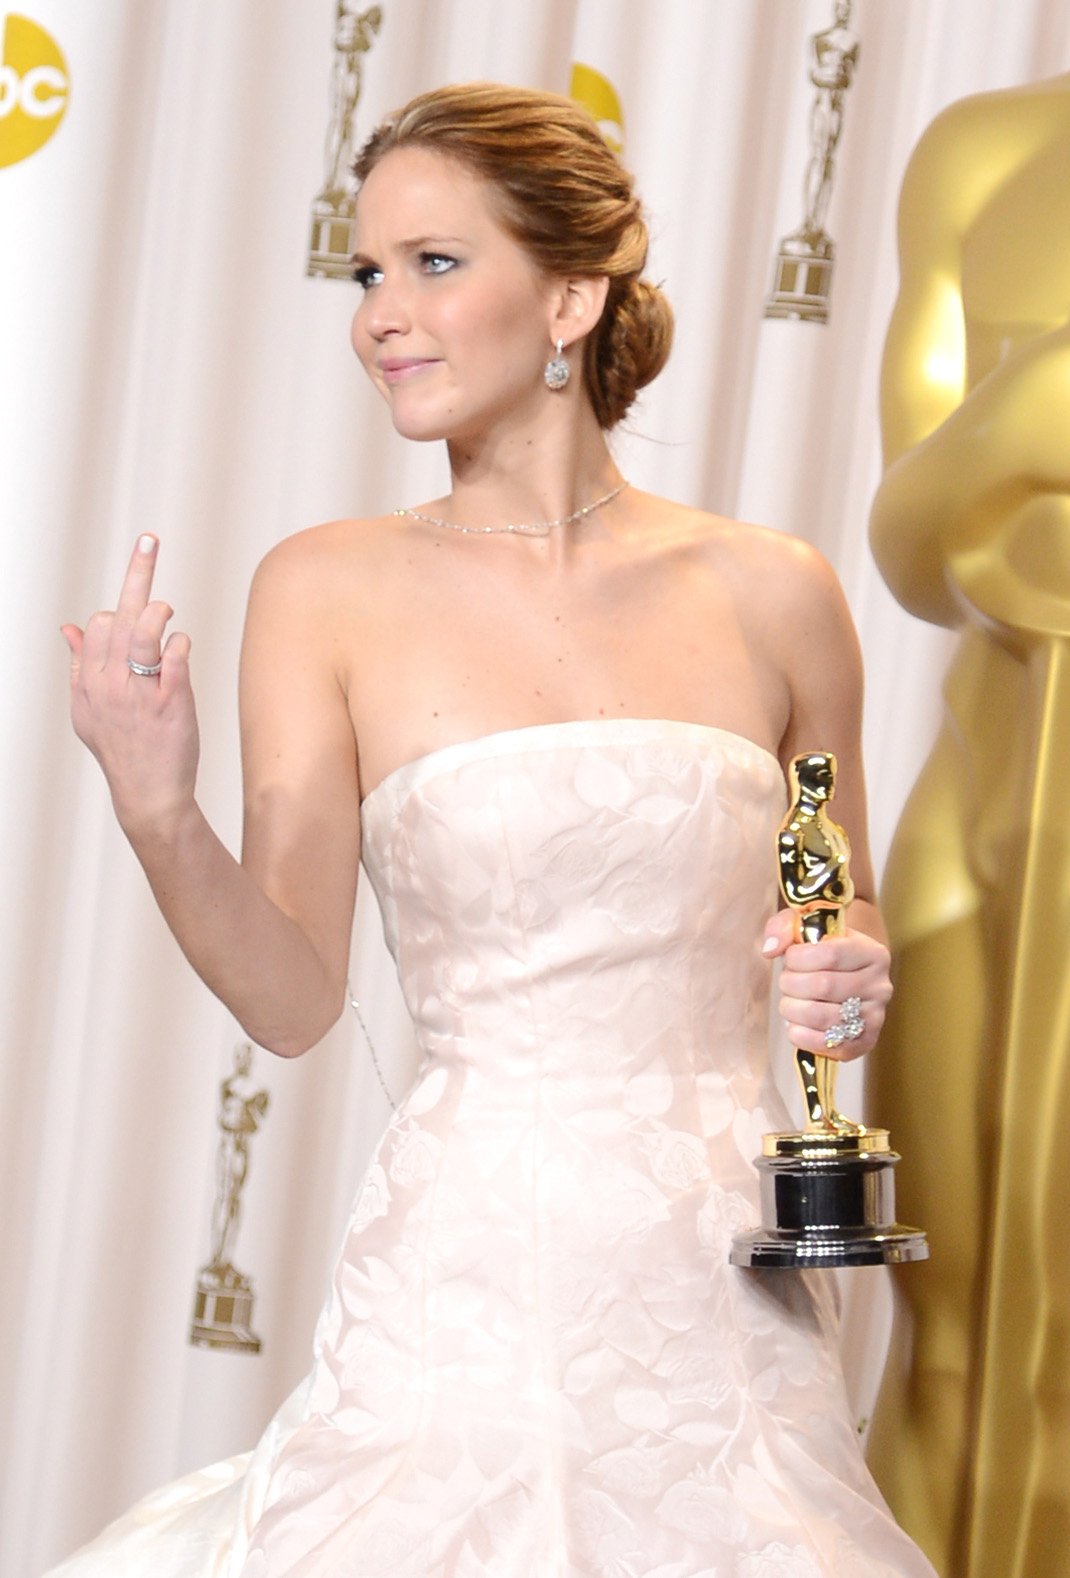 Η Jennifer Lawrence πήρε το Οσκαρ Α γυναικείου και το γιόρτασε / Φωτογραφία Getty Images